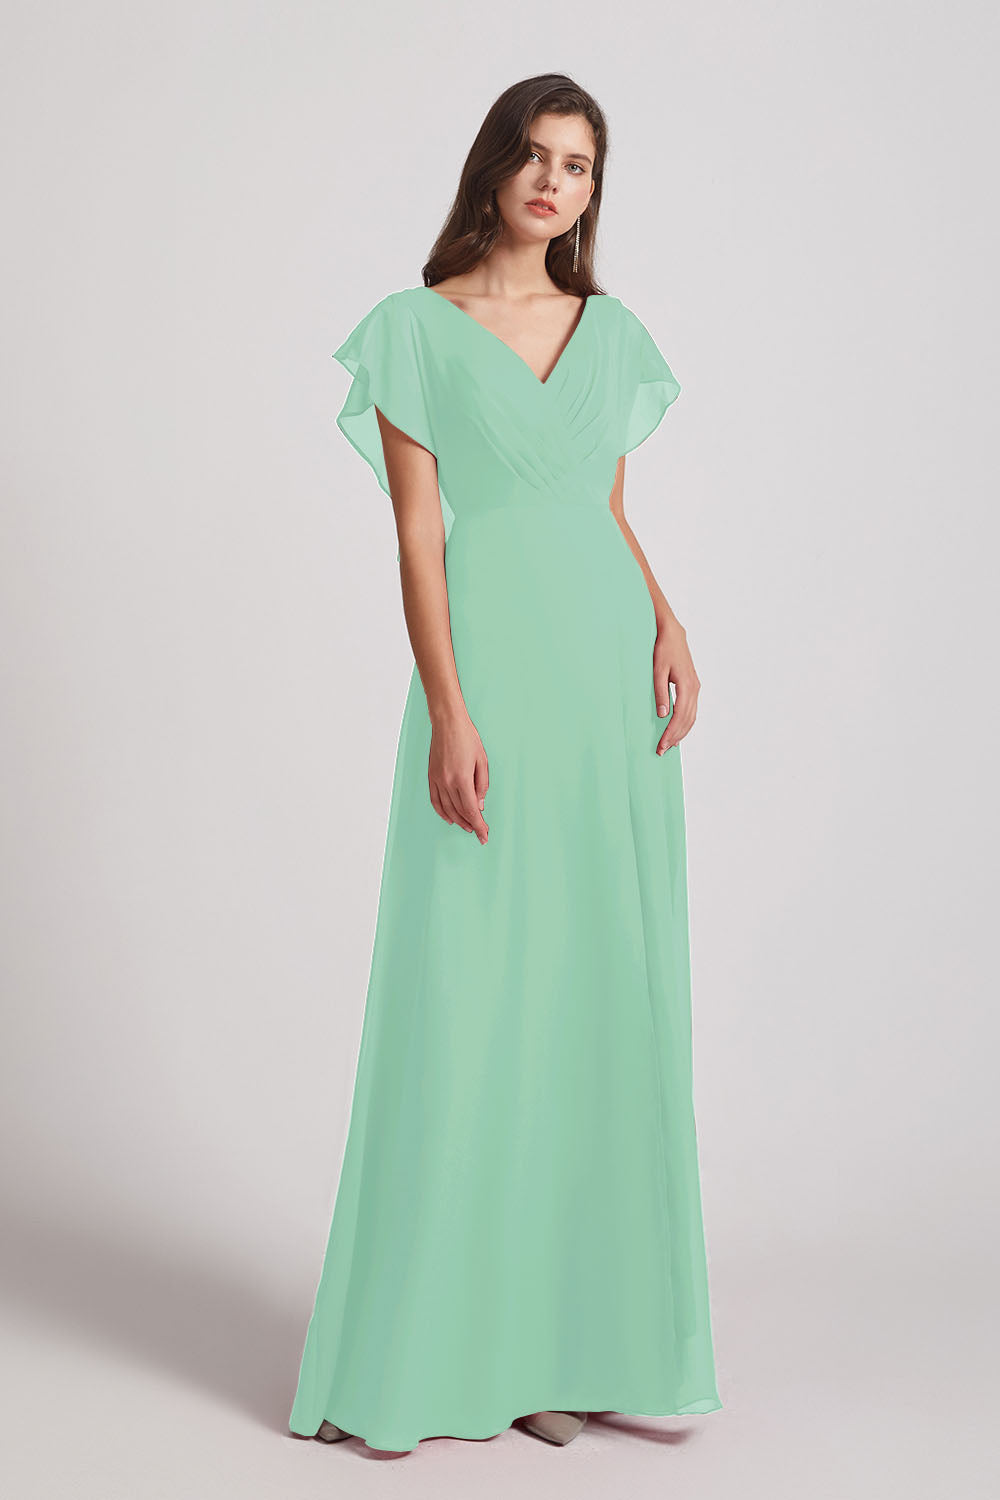 Alfa Bridal Mint Green V-Neck Chiffon Long Backless Bridesmaid Dresses with Side Slit (AF0071)